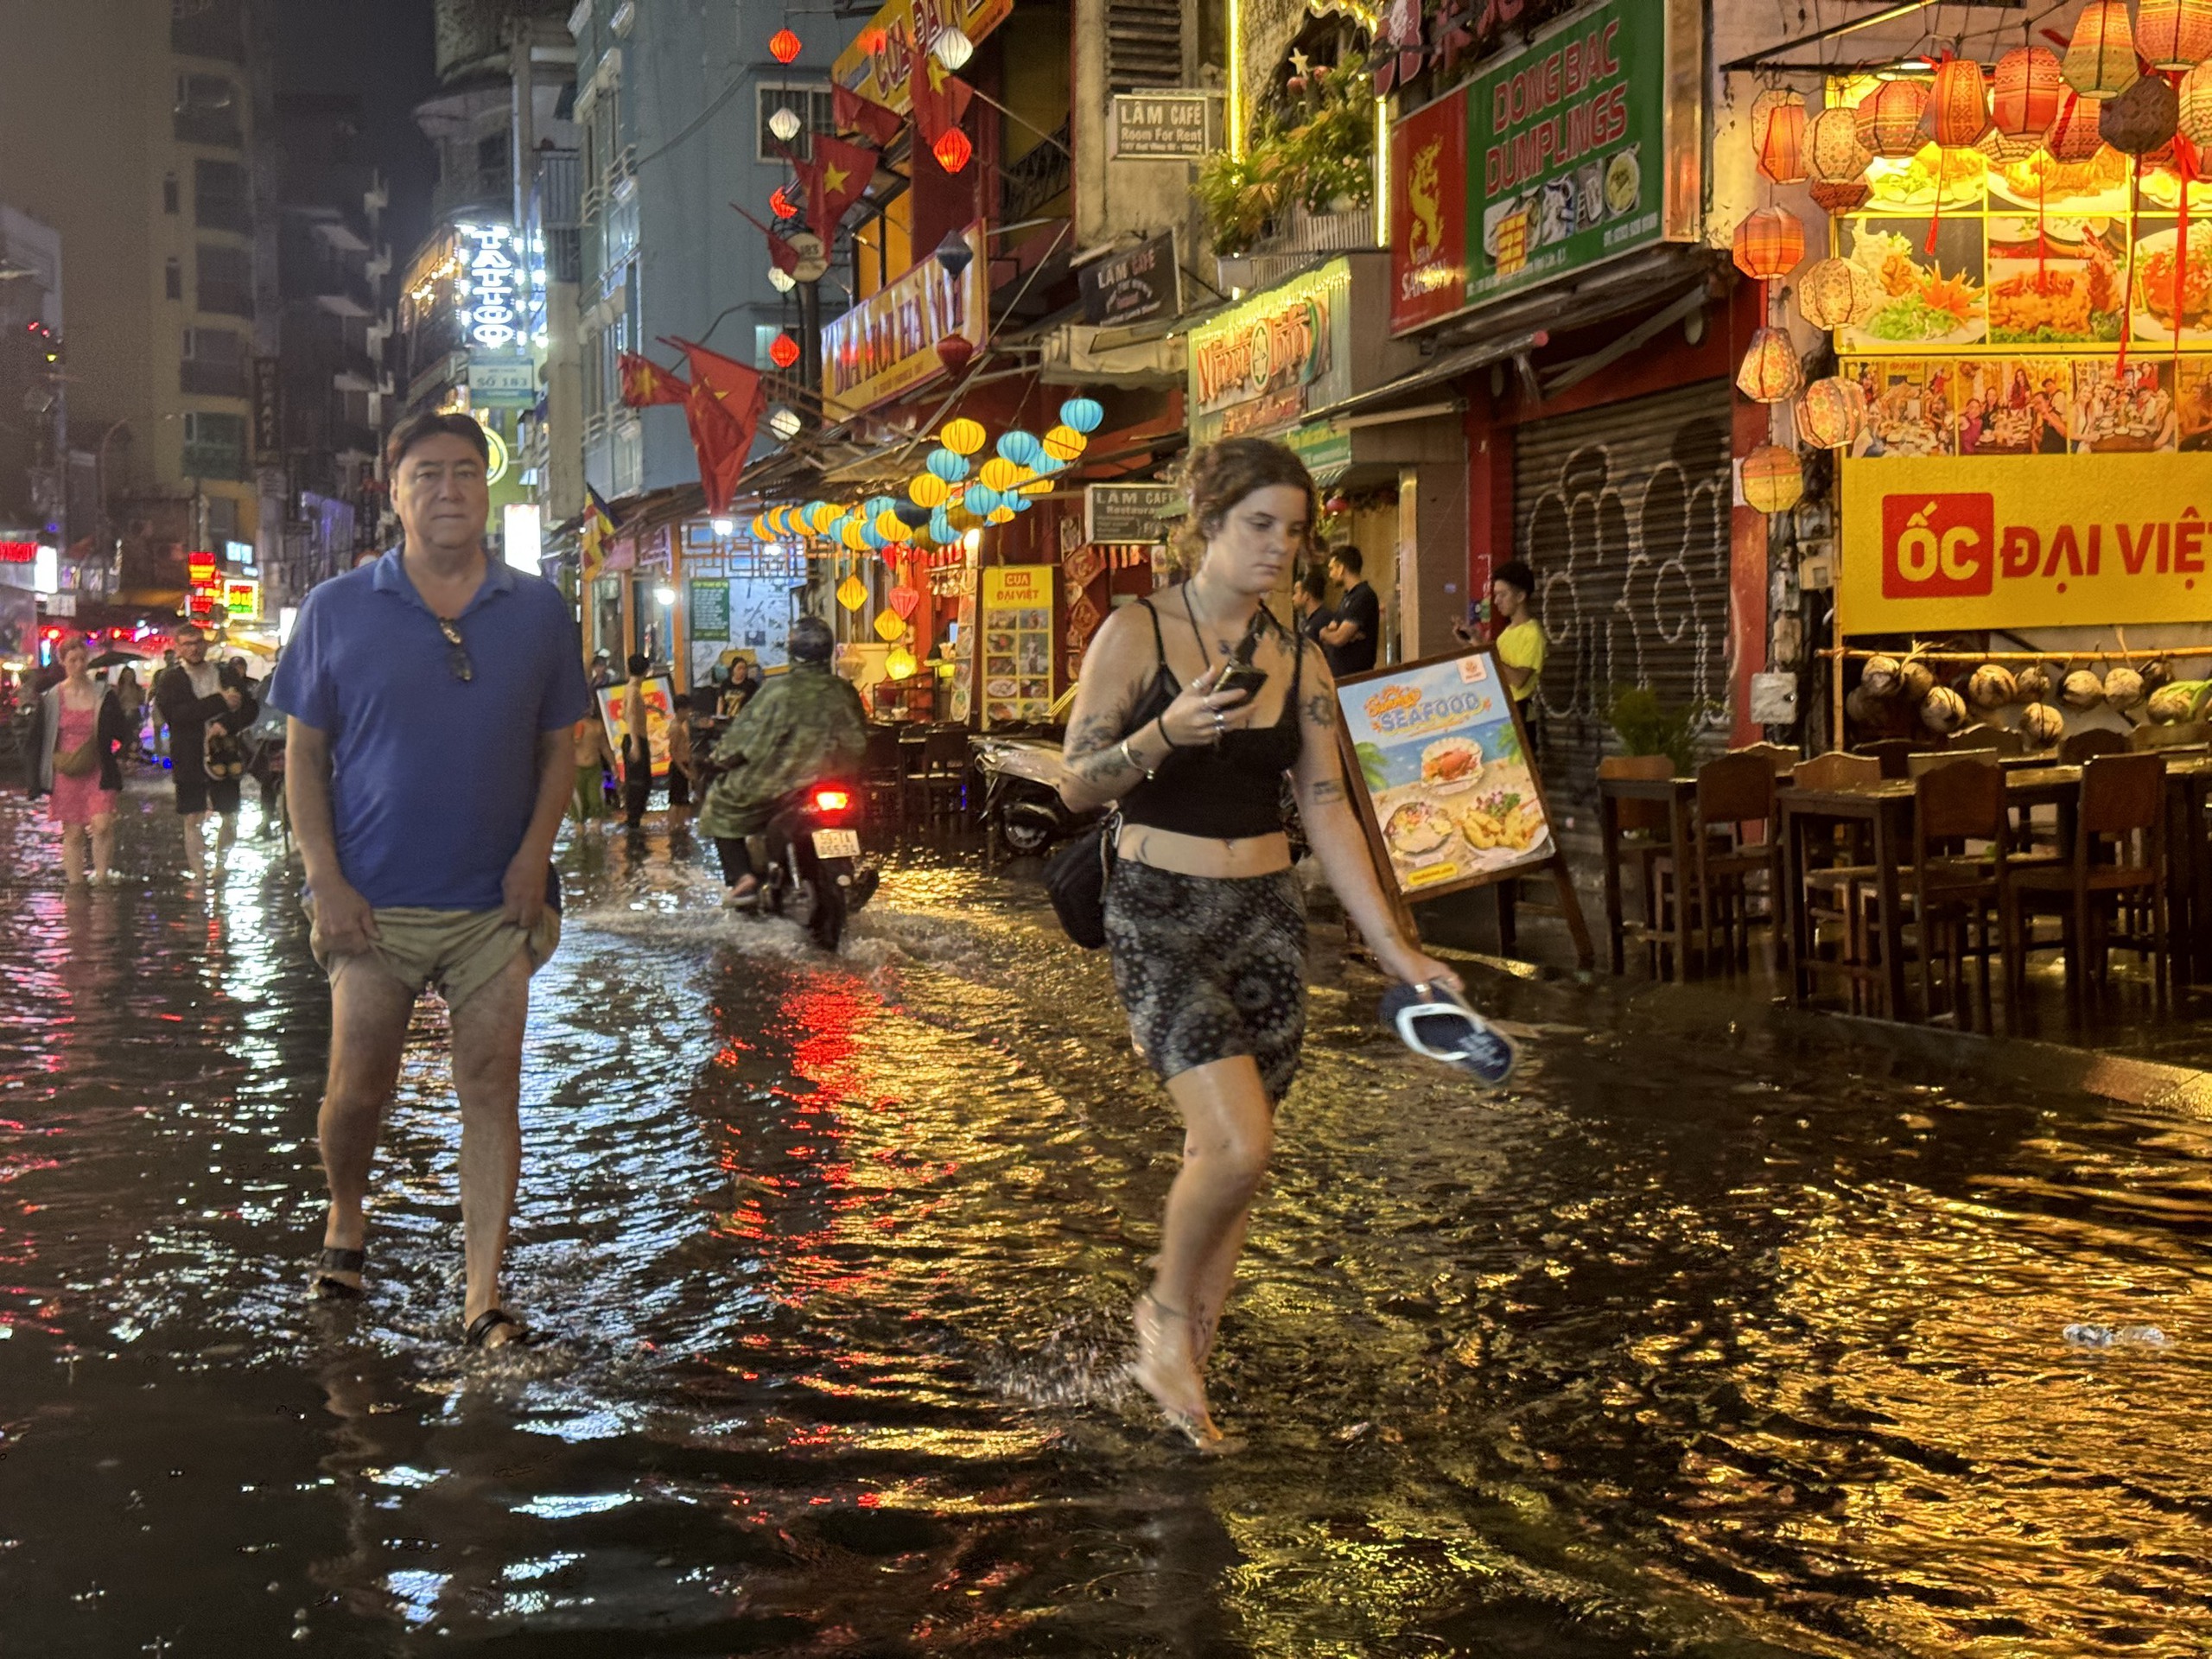 Phố đi bộ Bùi Viện ngập sau cơn mưa lớn, khách nước ngoài có 'trải nghiệm khó quên'- Ảnh 5.